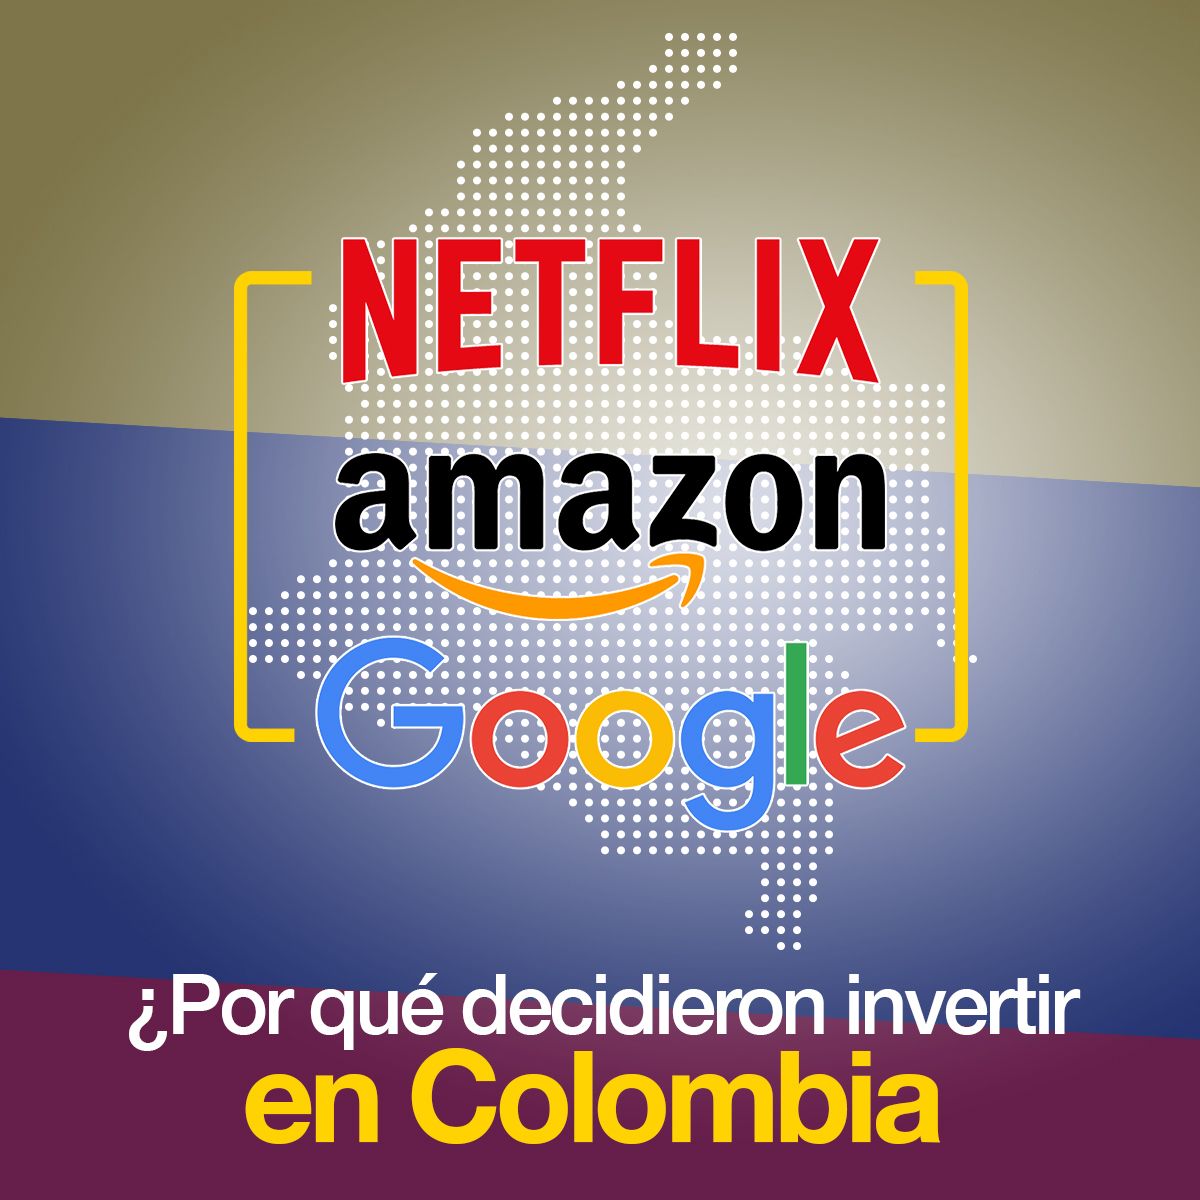 Netflix, Amazon y Google ¿Por qué decidieron invertir en Colombia?